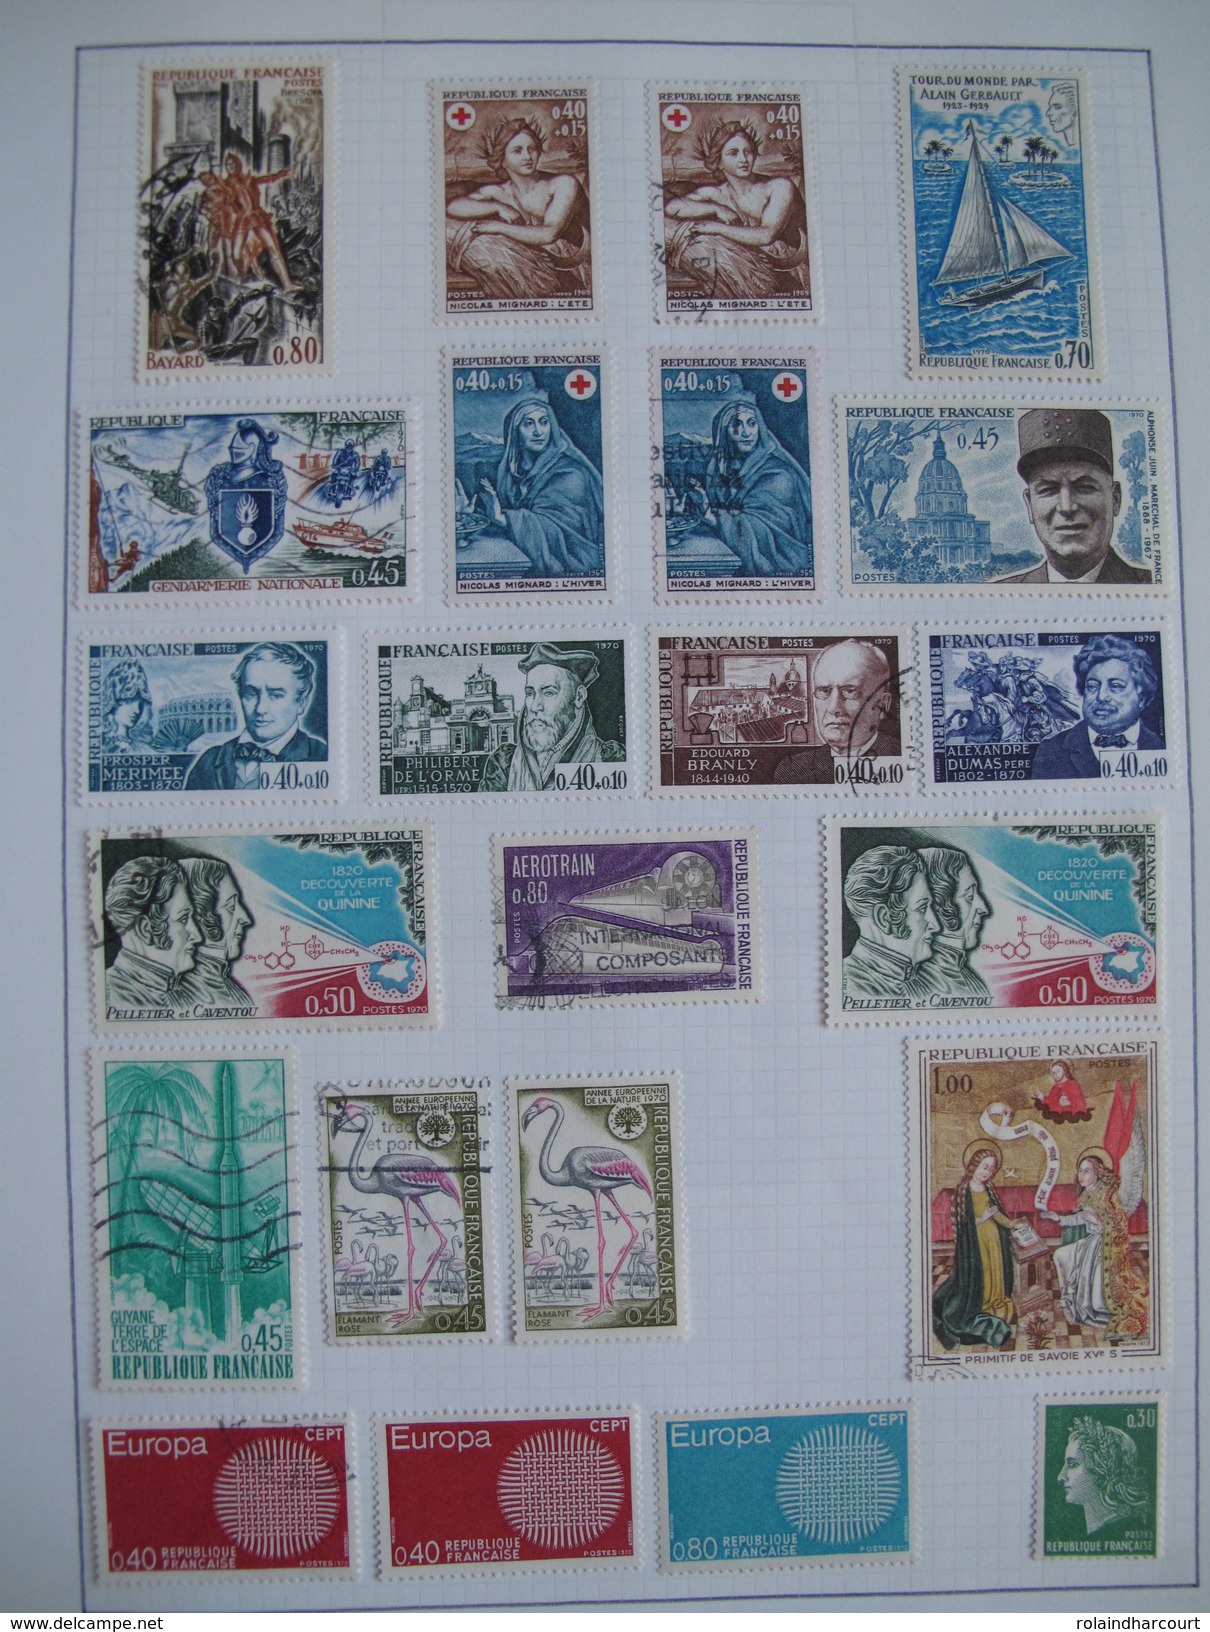 LOT VL4380/11 - 1959/2000 - Plus de 1750 timbres neufs* et oblitérés dans un ALBUM (mini-charnières) - FORTE COTE +++